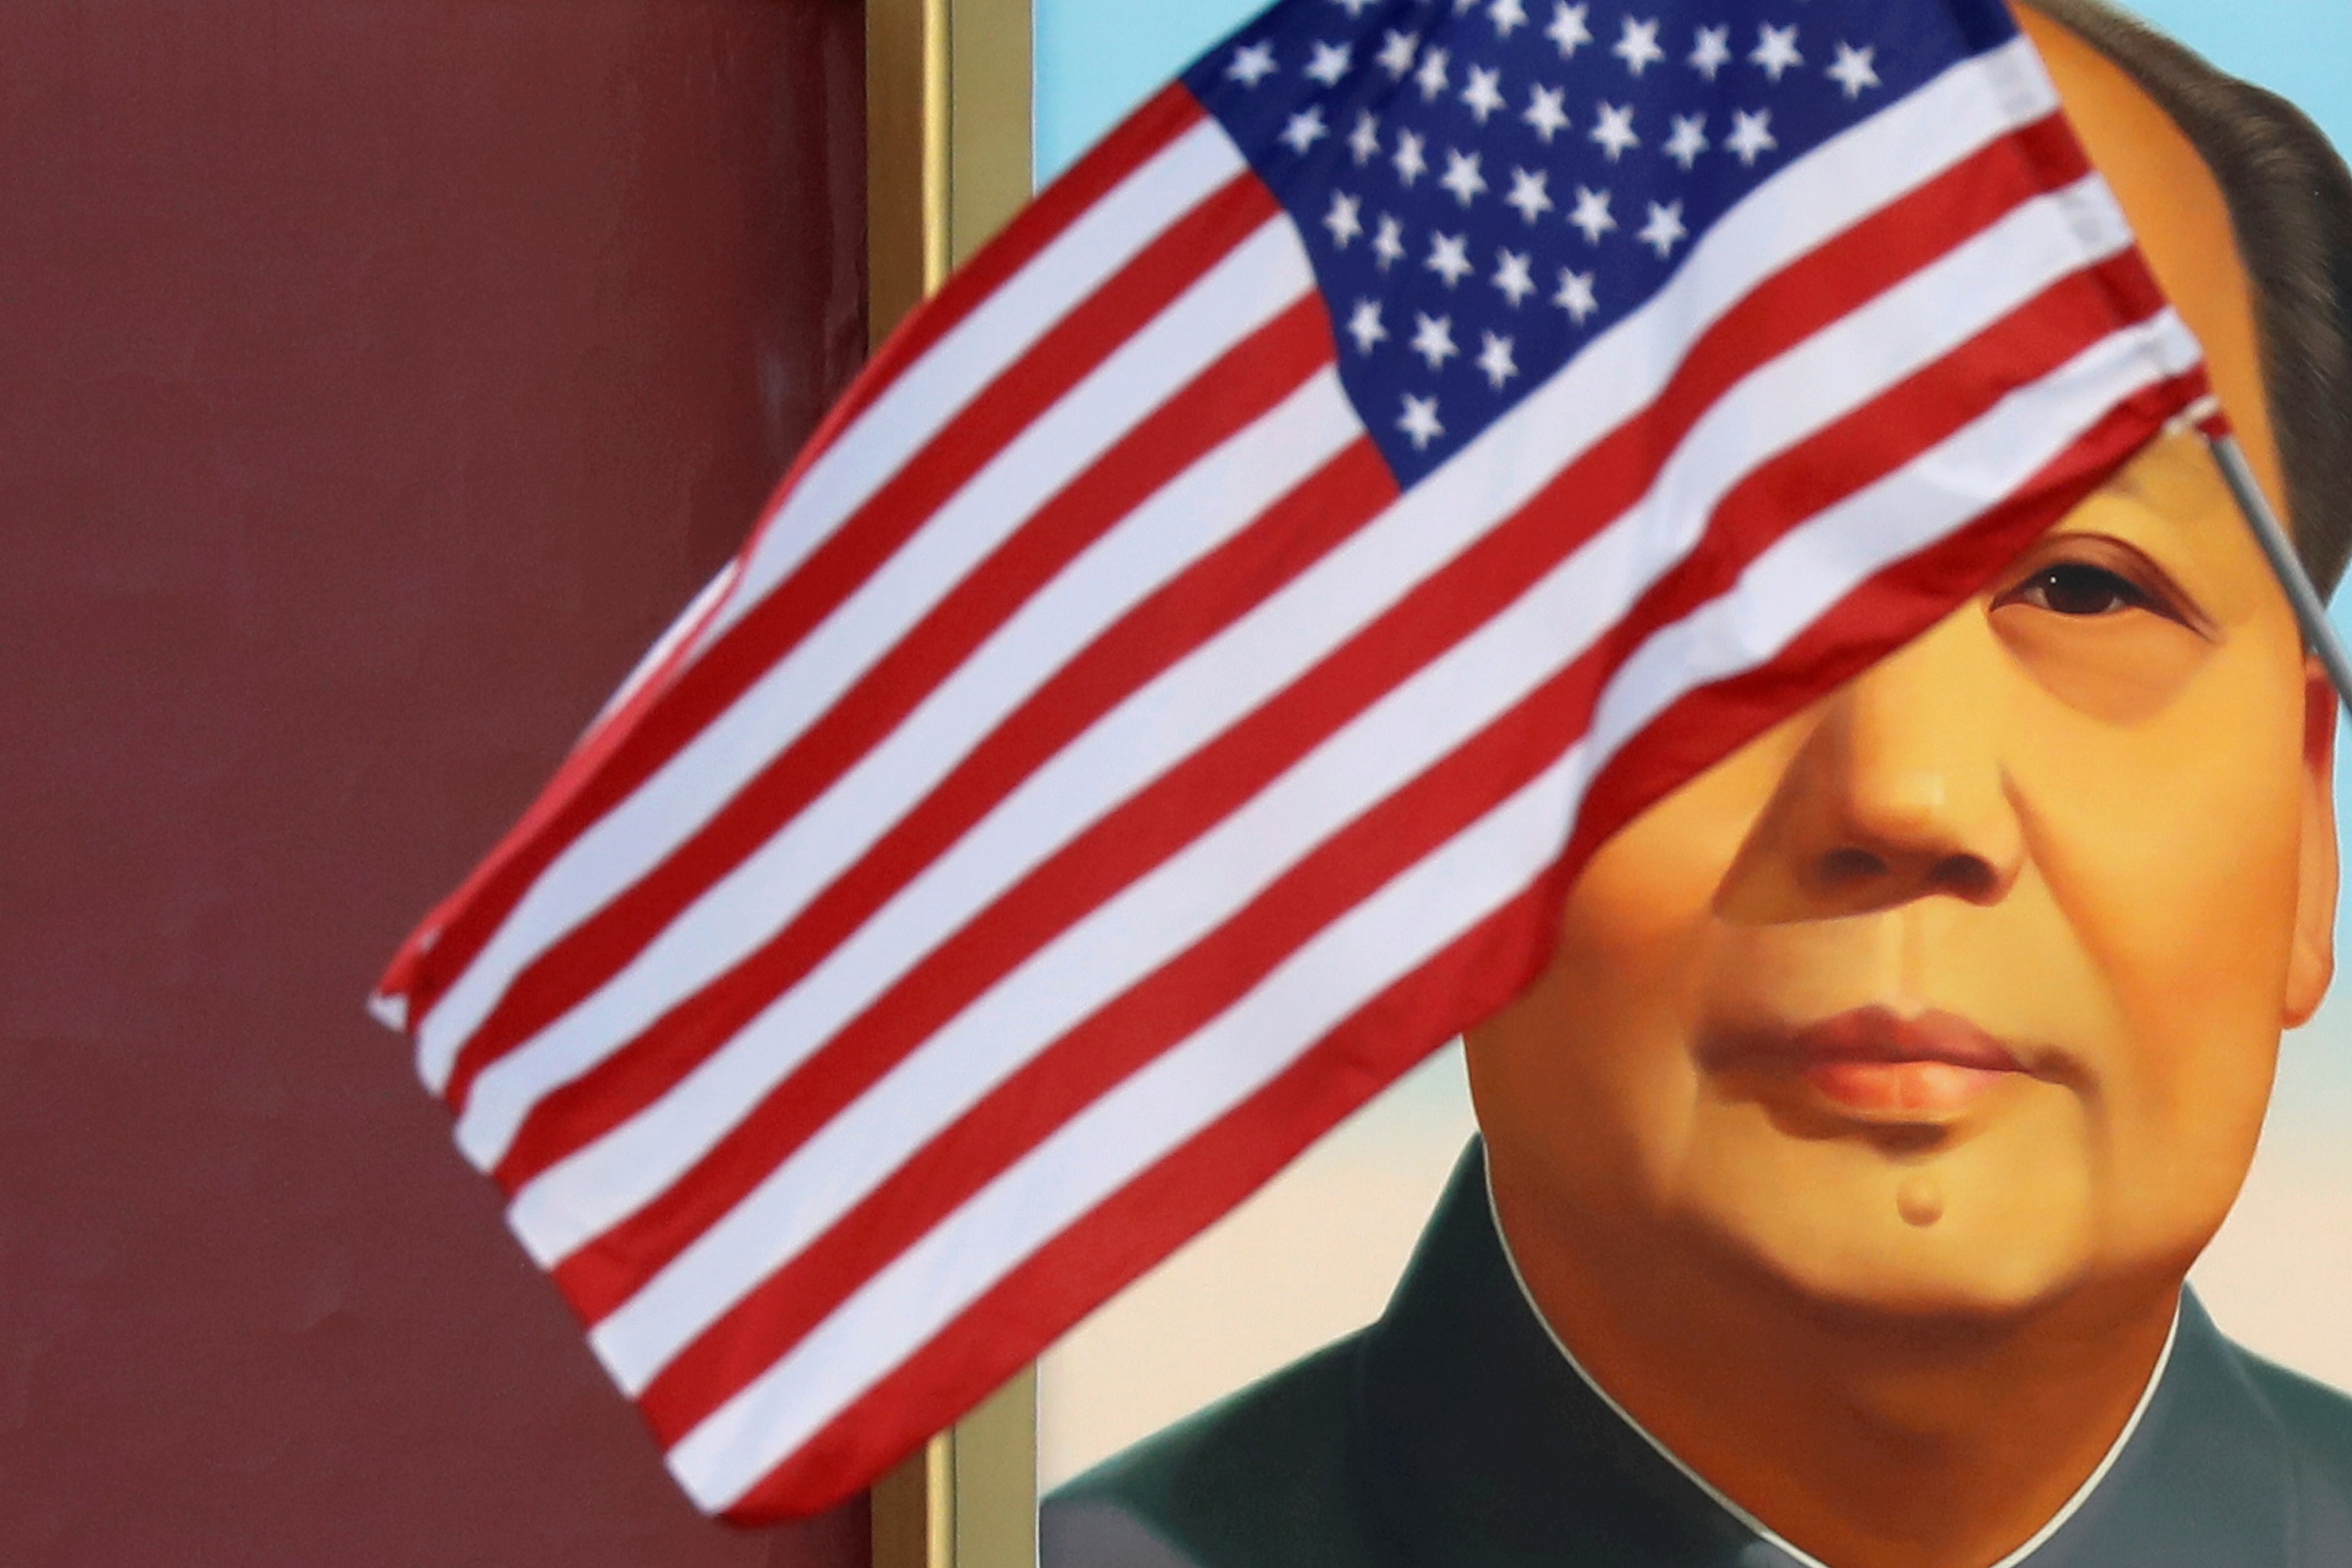 العلم الأميركي يرفرف أمام صورة للرئيس الصيني الراحل ماو تسي تونغ أثناء زيارة الرئيس الأميركي دونالد ترامب إلى بكين، 8 نوفمبر 2017. رويترز